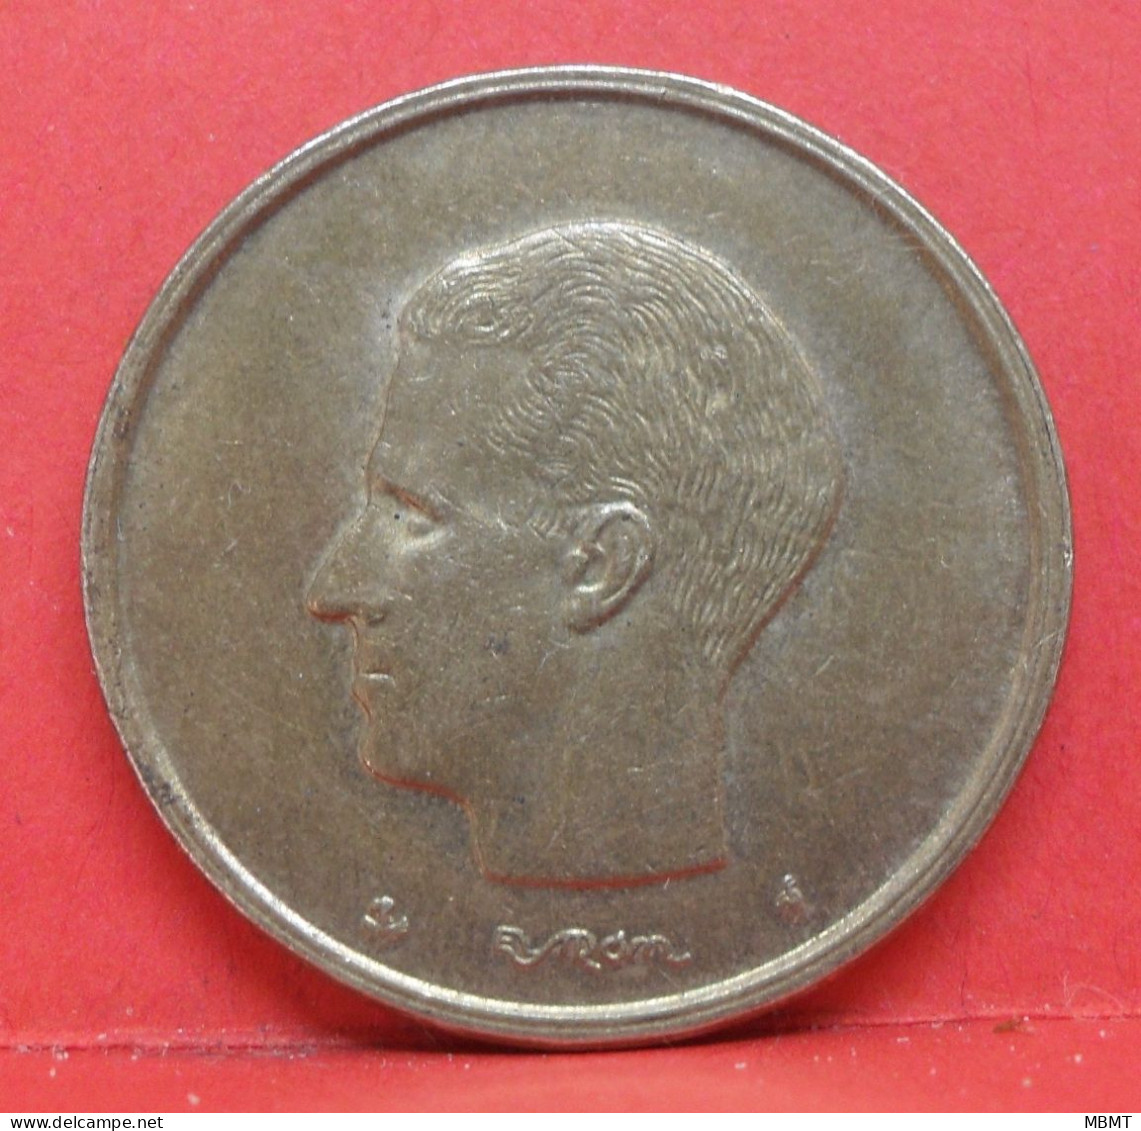 20 Francs 1980 - SUP - Pièce Monnaie Belgique - Article N°1844 - 20 Frank